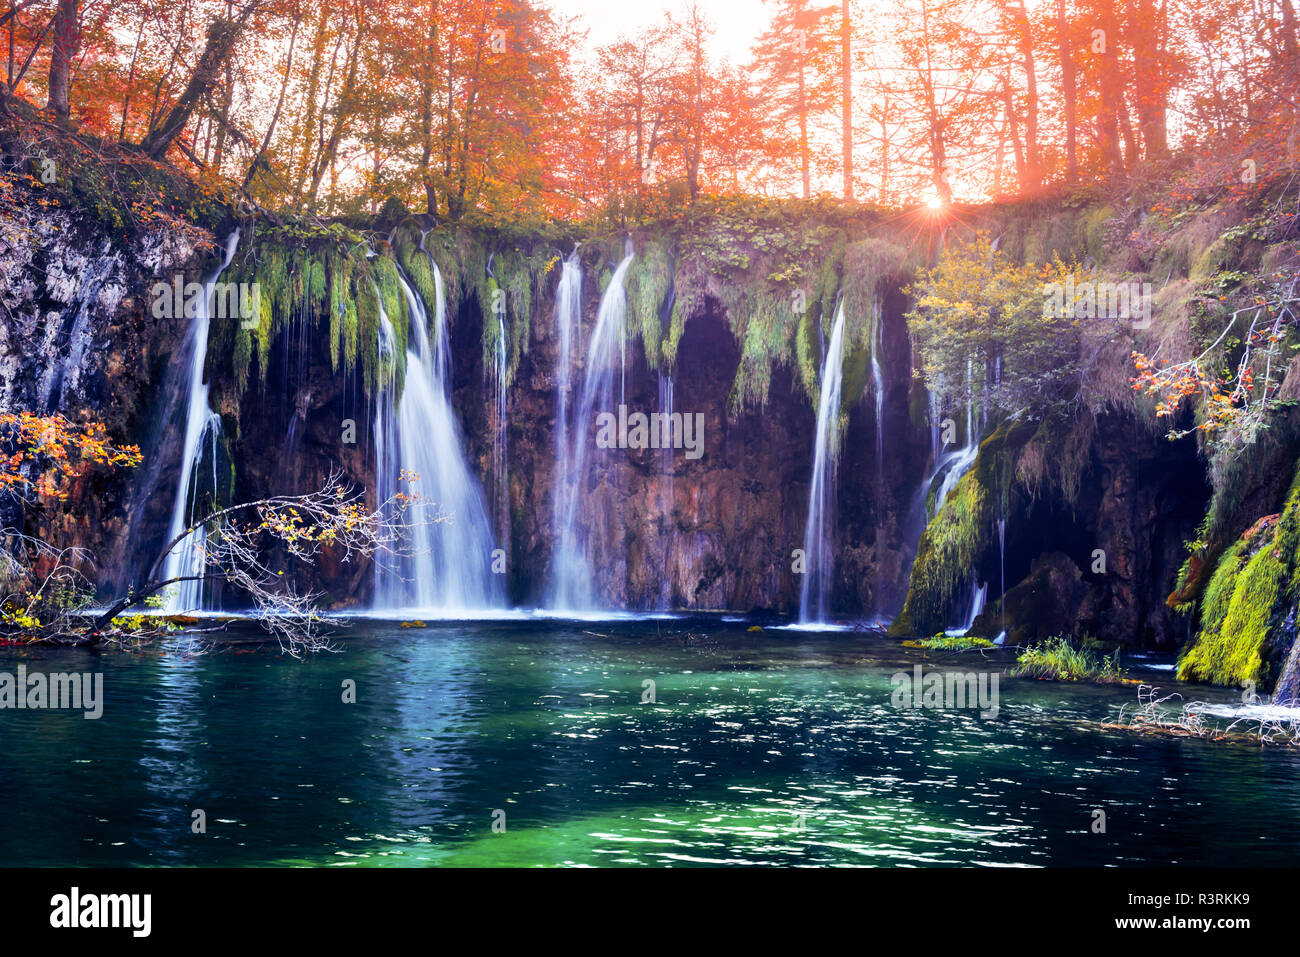 Erstaunliche Wasserfall mit reinen blauen Wasser der Plitvicer Seen. Orange Herbst Wald für den Hintergrund. Nationalpark Plitvice, Kroatien. Landschaftsfotografie Stockfoto